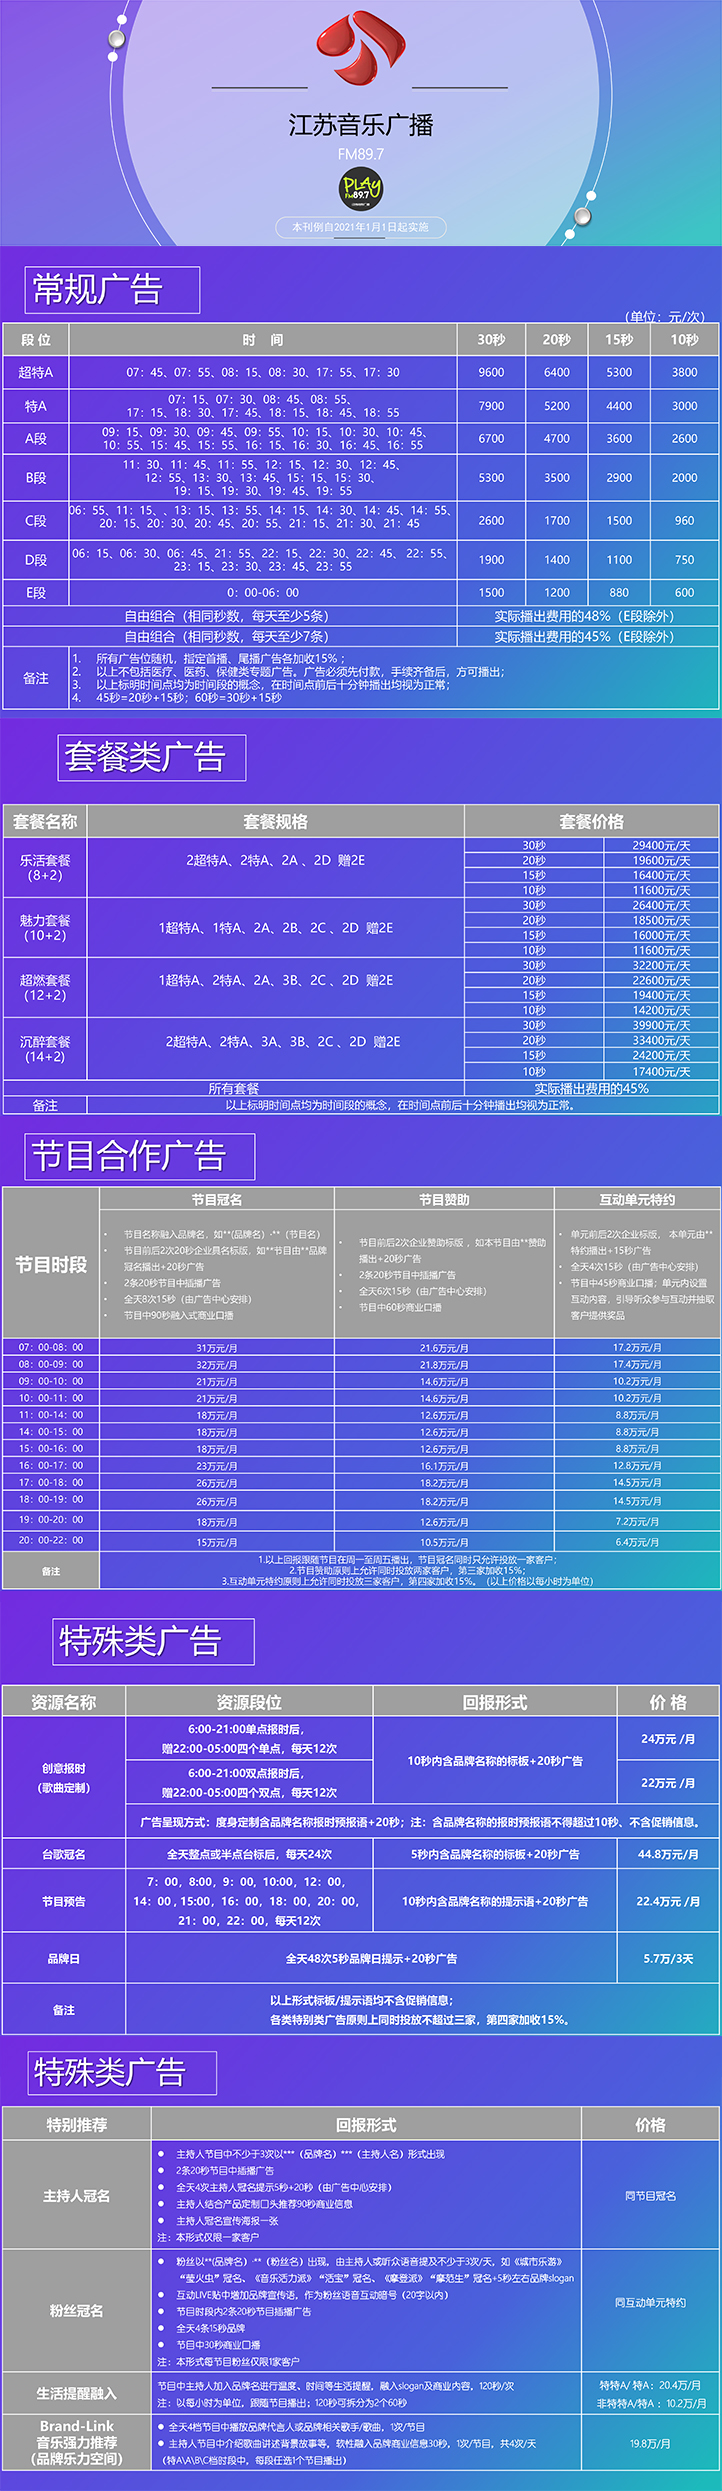 2021江苏人民广播电台音乐频率City FM89.7广告报价表.jpg